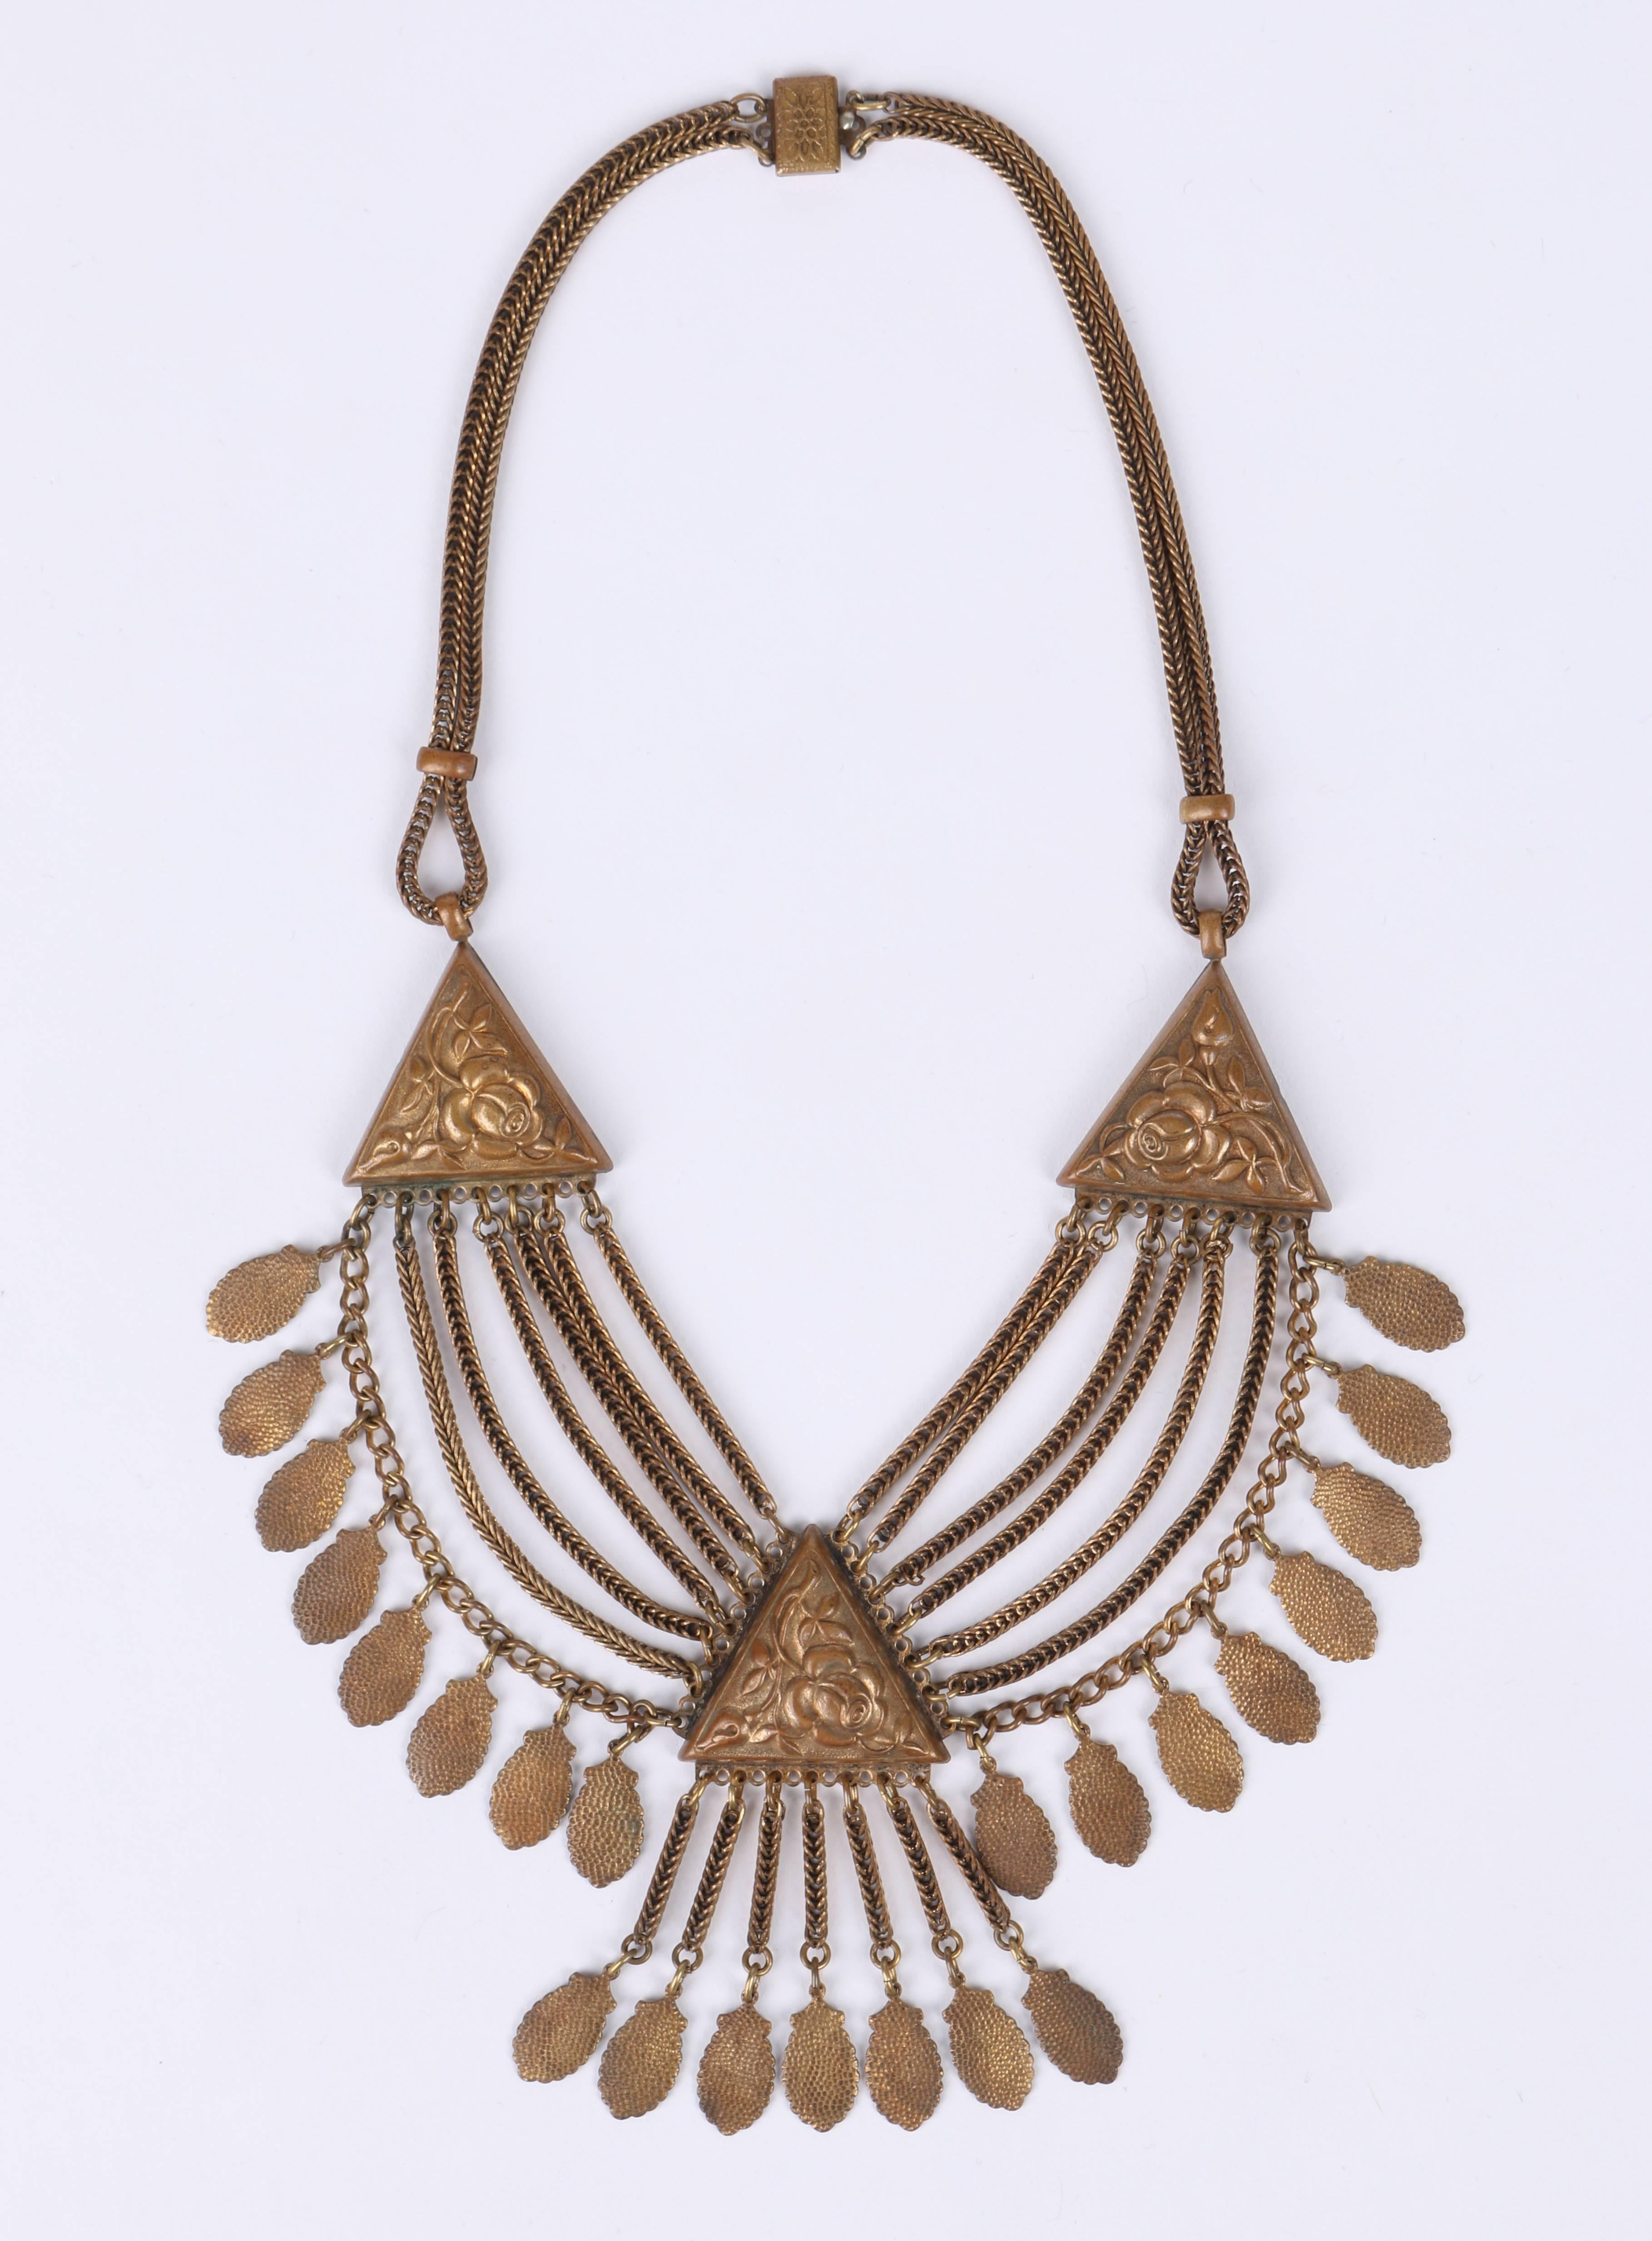 Vintage 1930's bronze art nouveau multi chain bib statement necklace.  Bib section of necklace (measures approximately 6 3/4